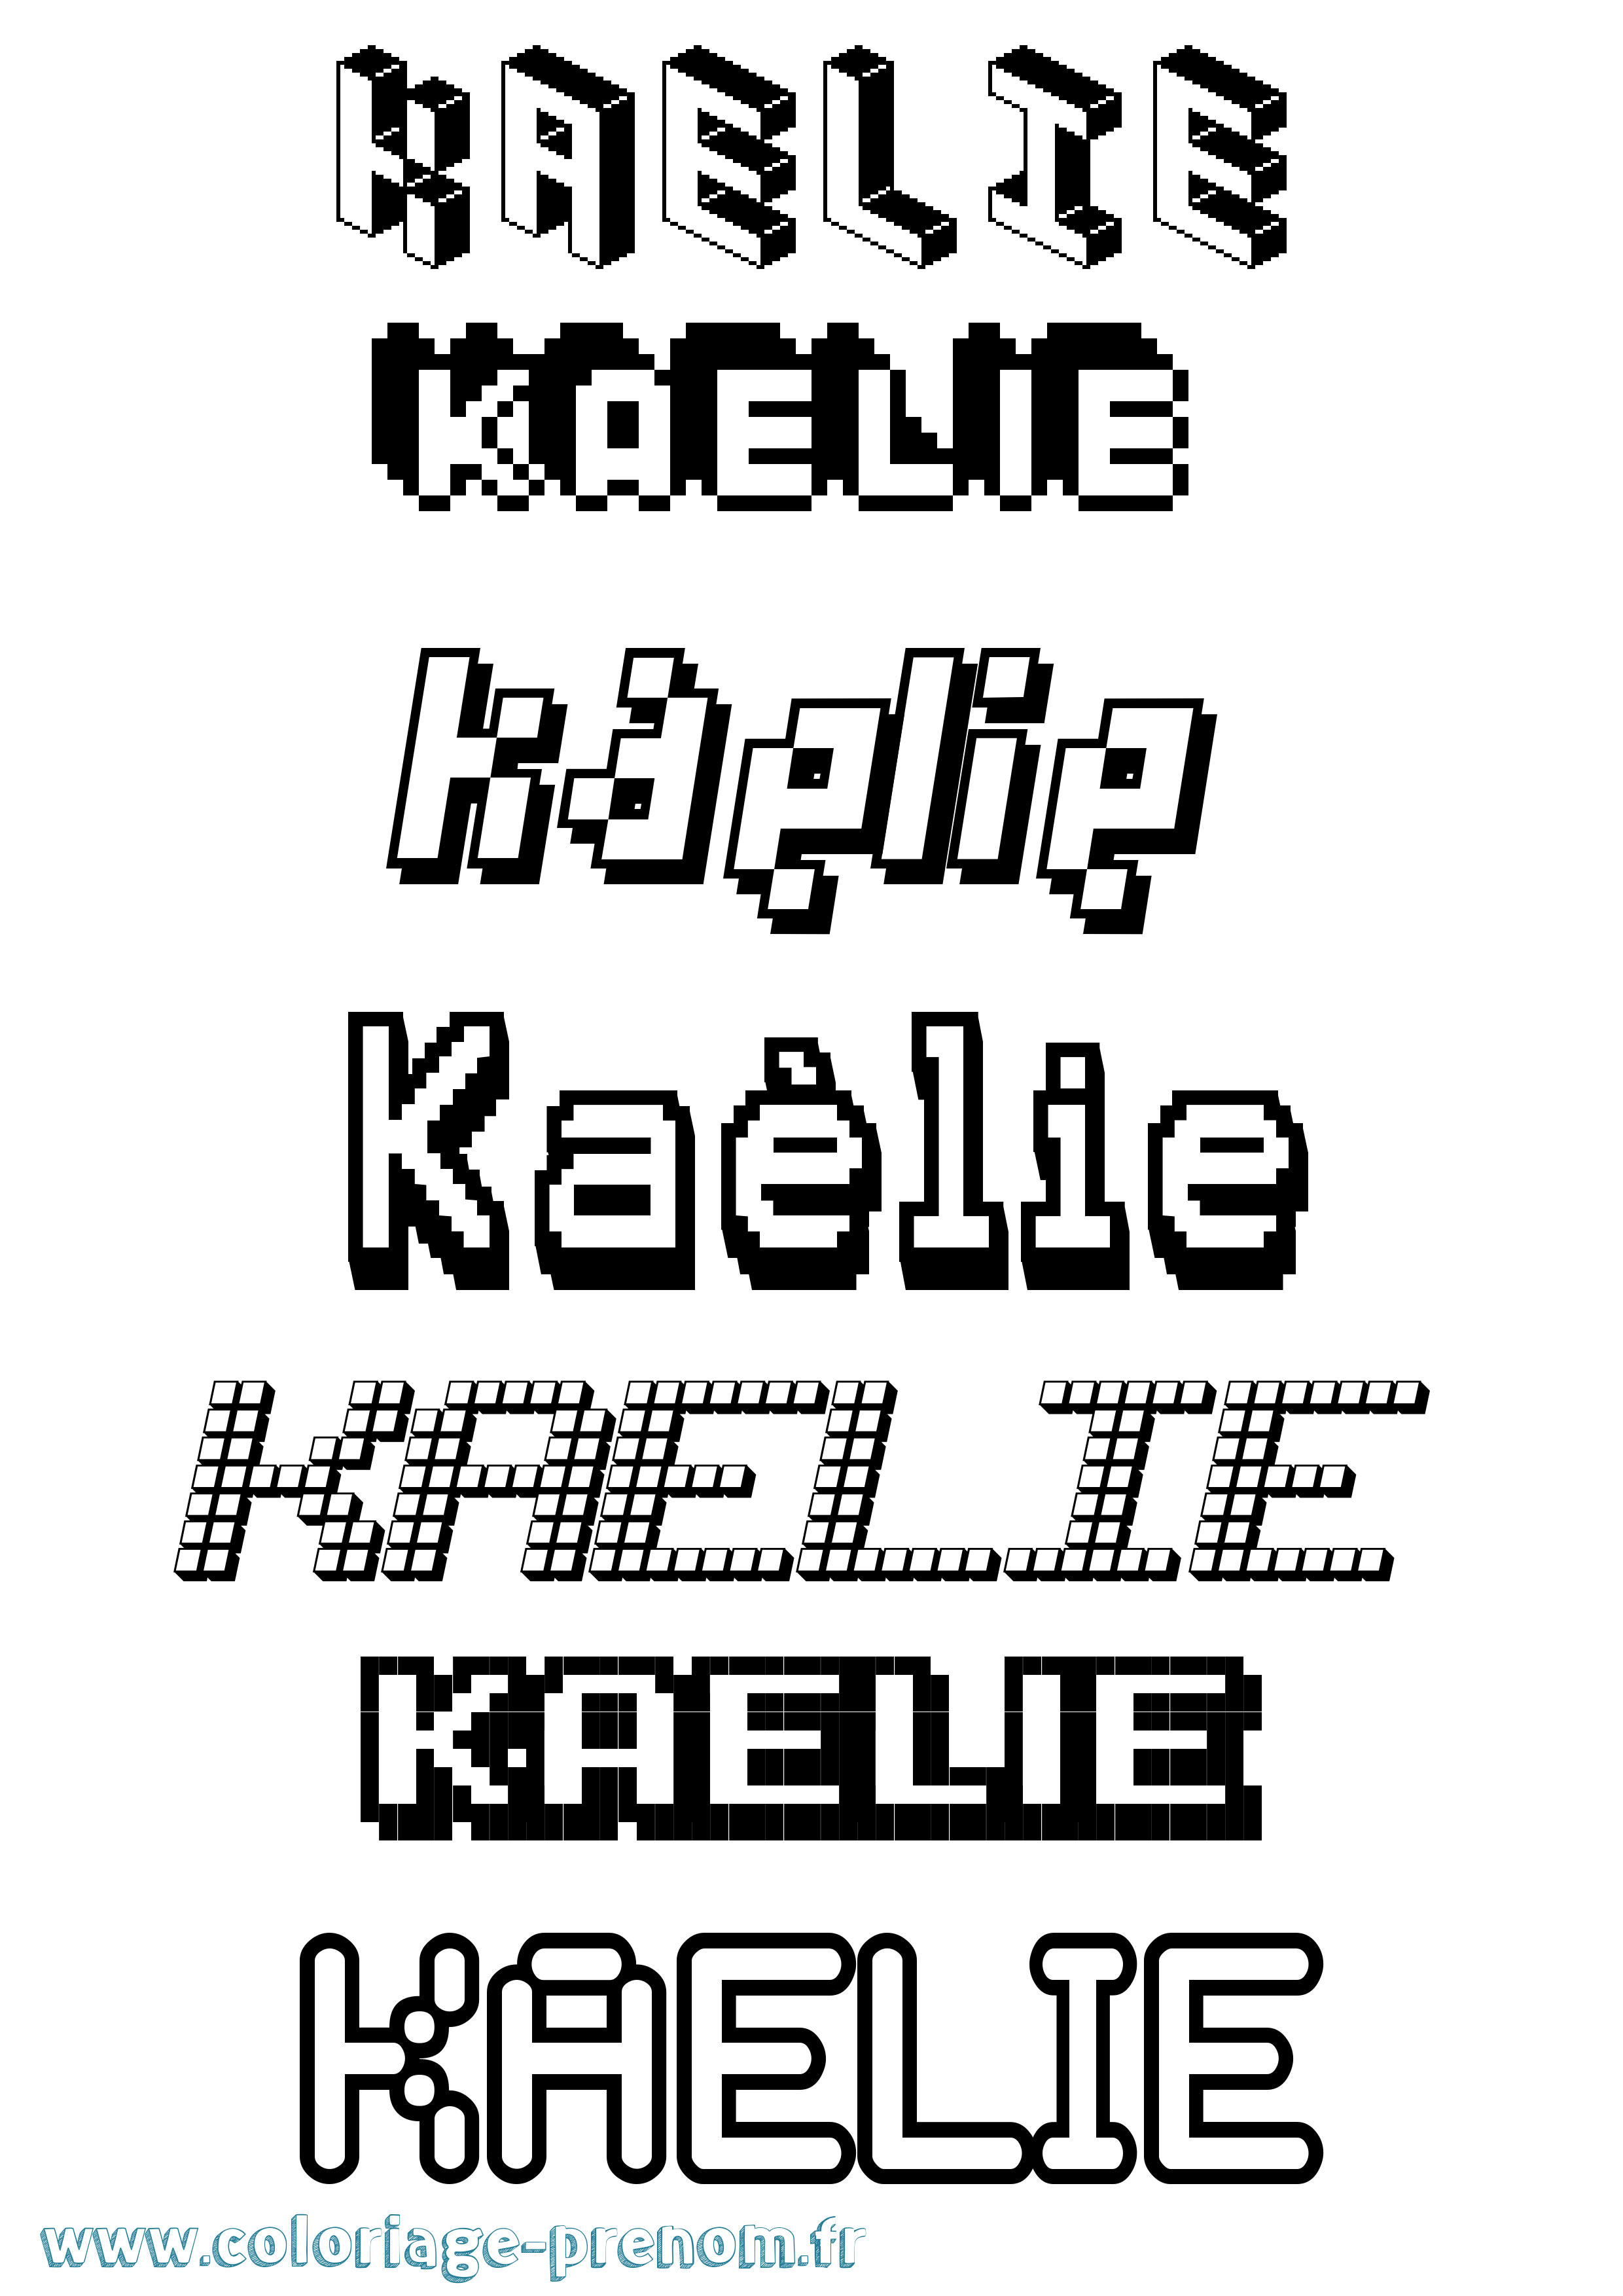 Coloriage prénom Kaélie Pixel